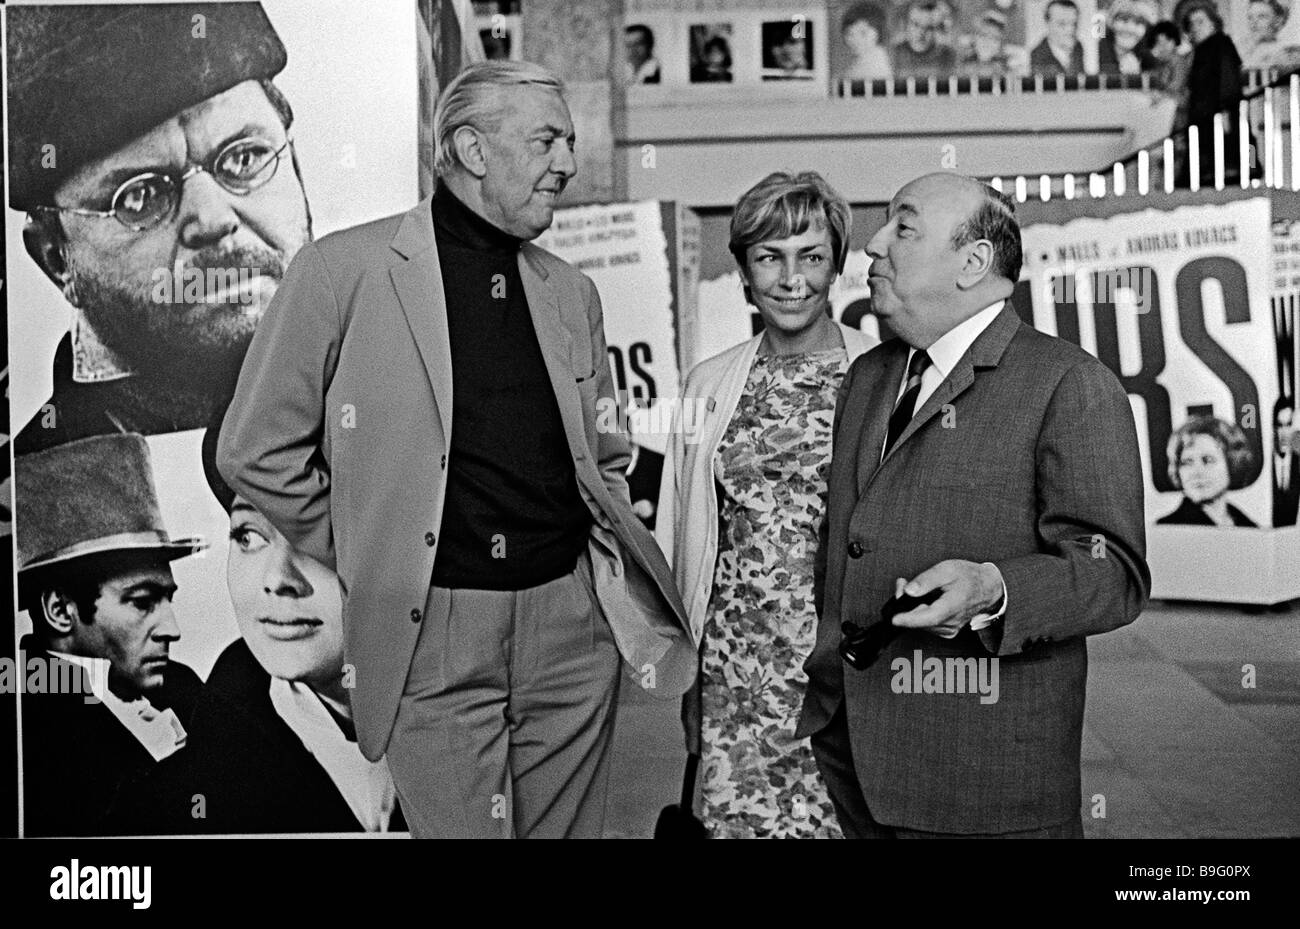 Les réalisateurs français Jacques Tati à gauche avec sa femme et Marcel  Carne pendant la 6e Festival International du Film de Moscou Photo Stock -  Alamy